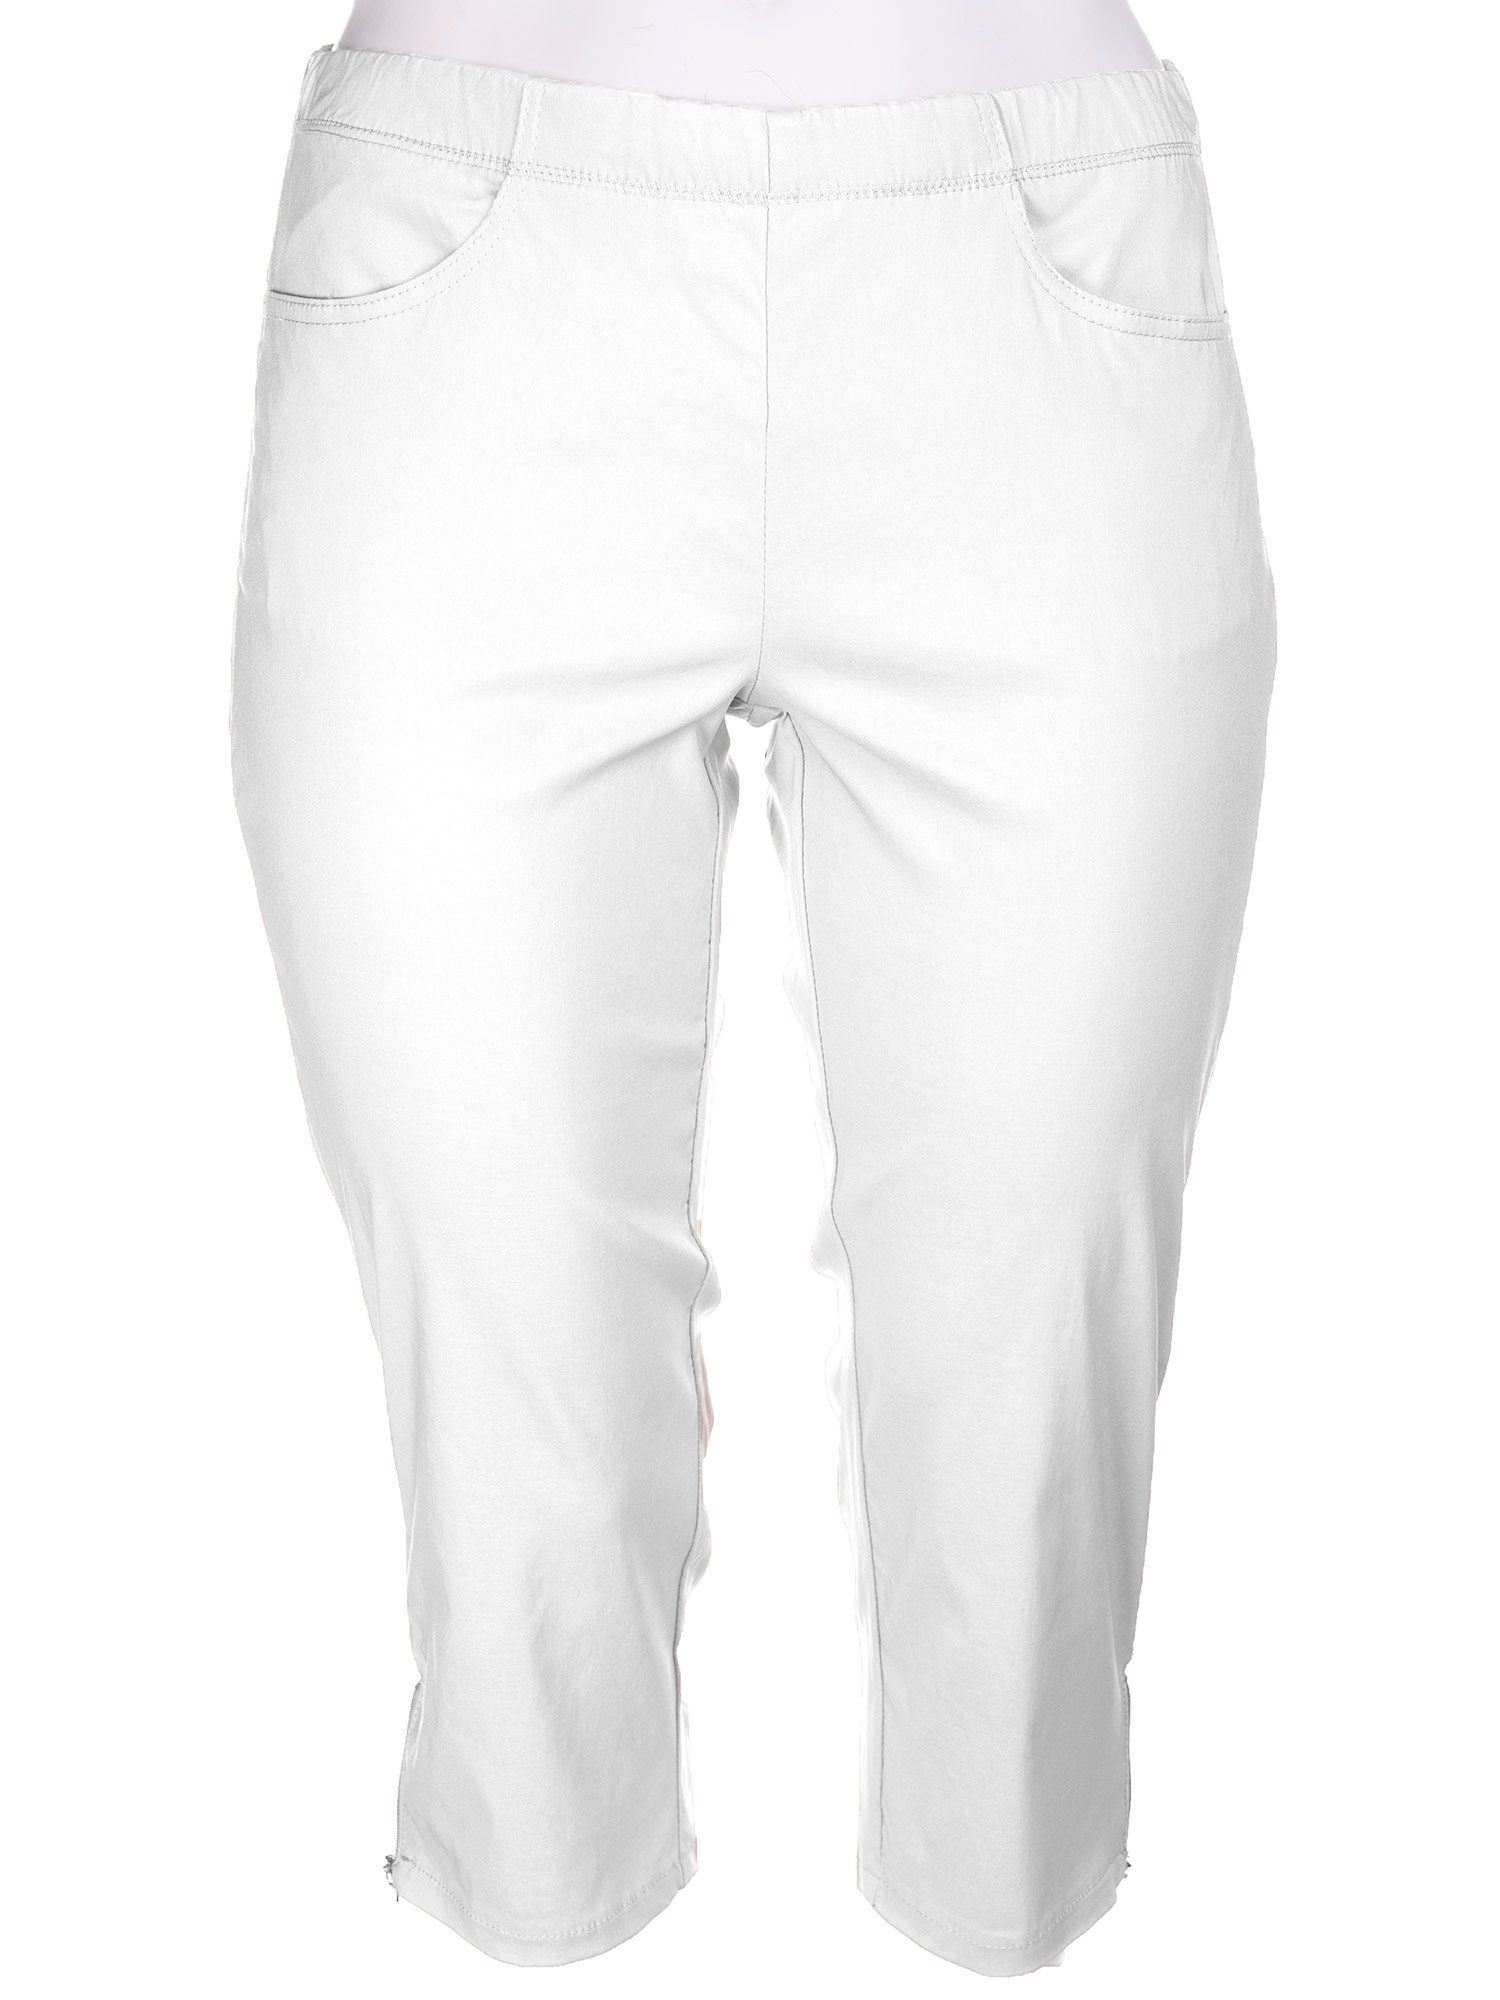 JAZZY - Hvite capri bukser med glidelås detalje fra Zhenzi